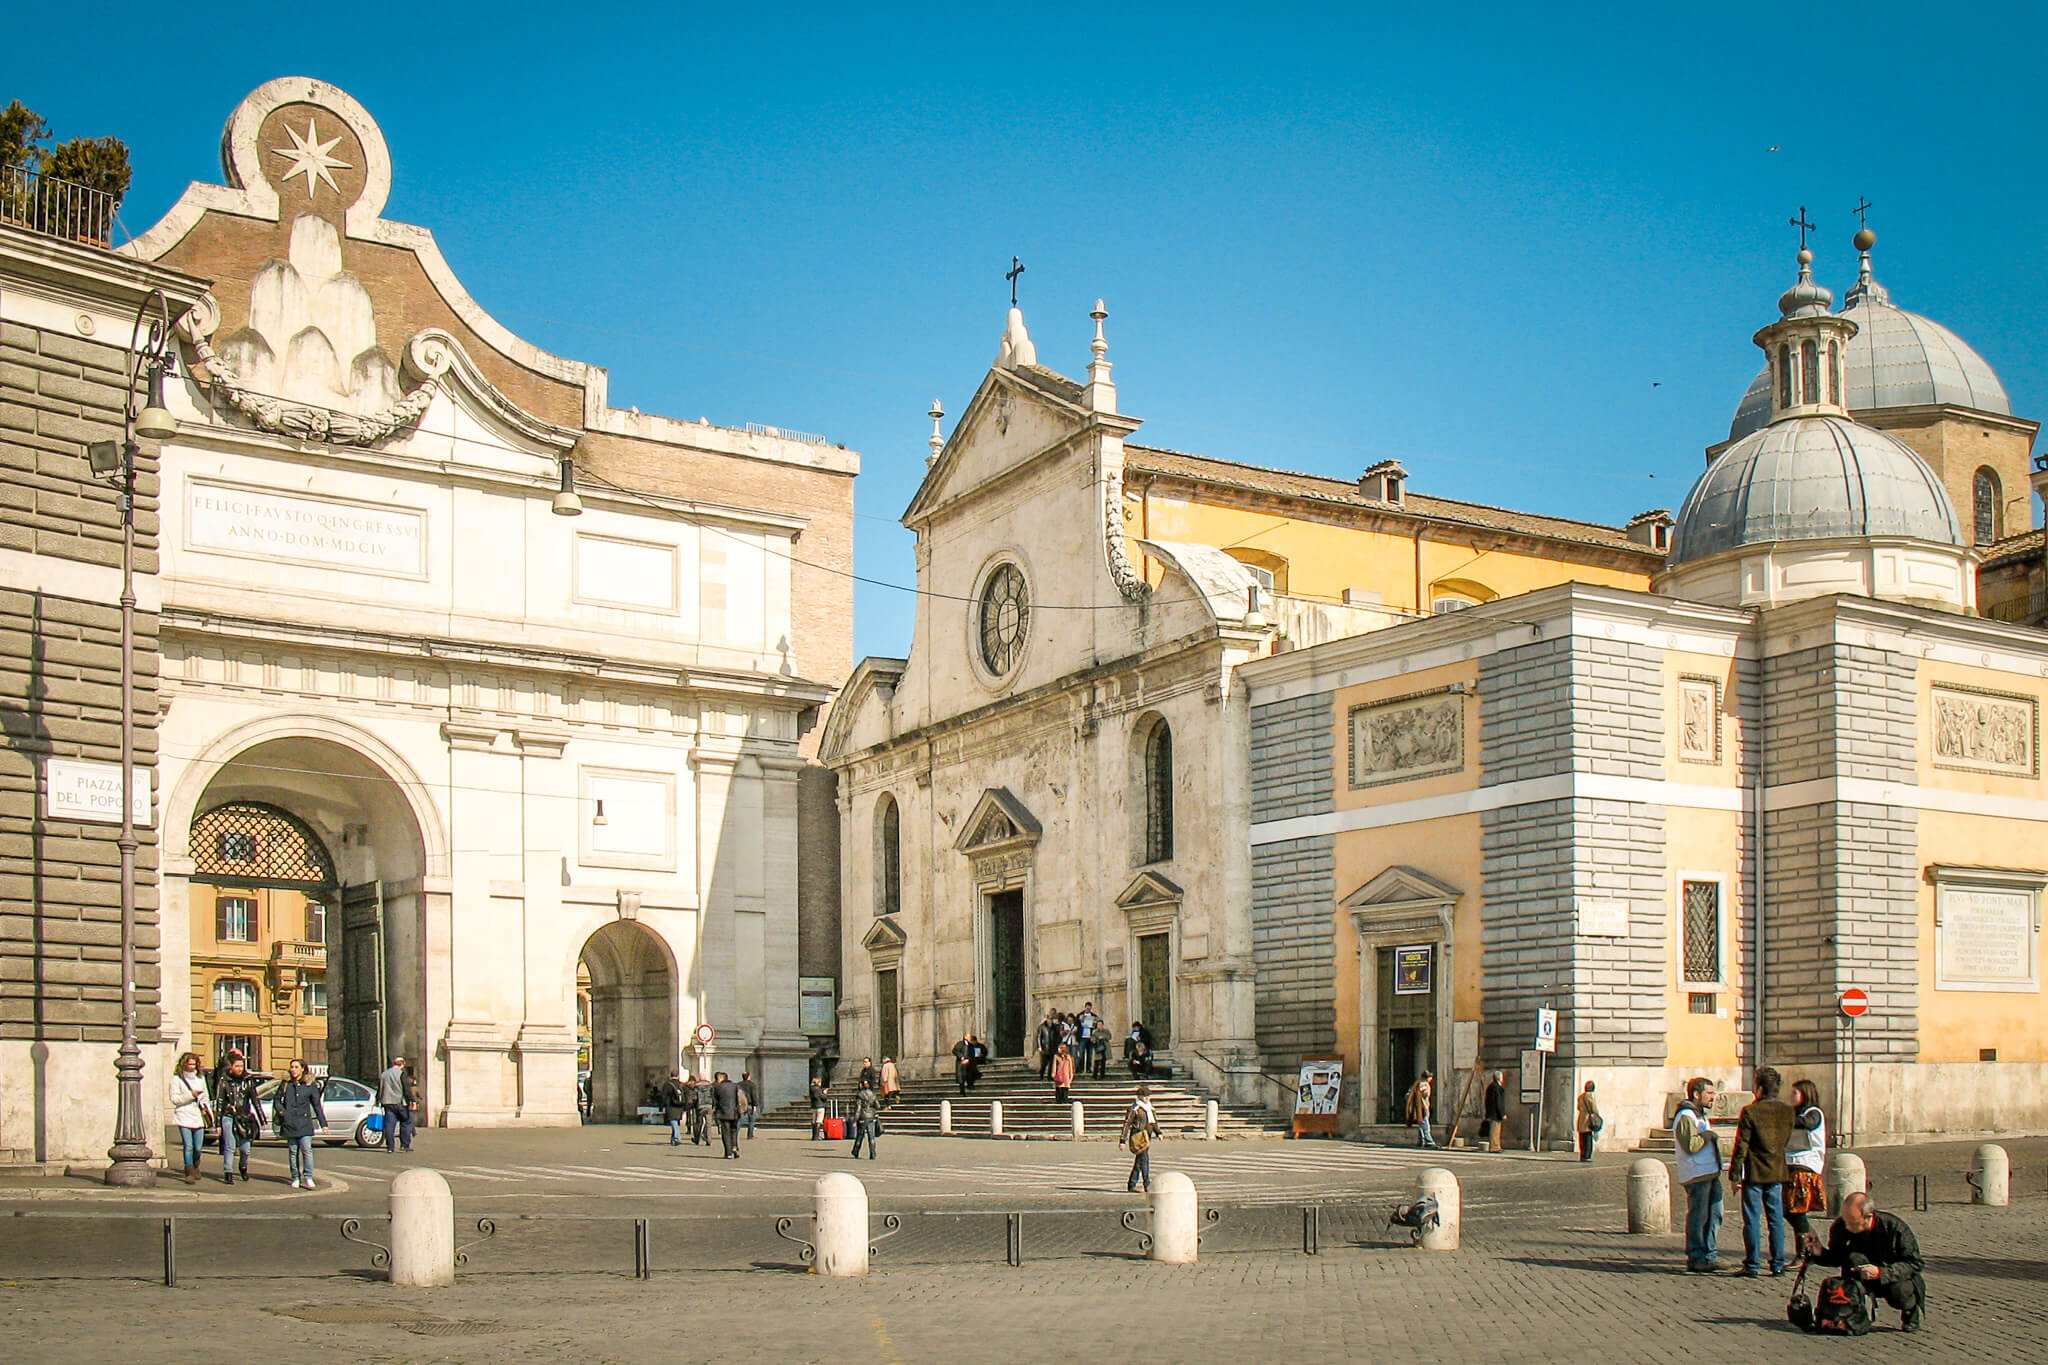 The exterior of Santa Maria del Popolo and the Porta del Popolo